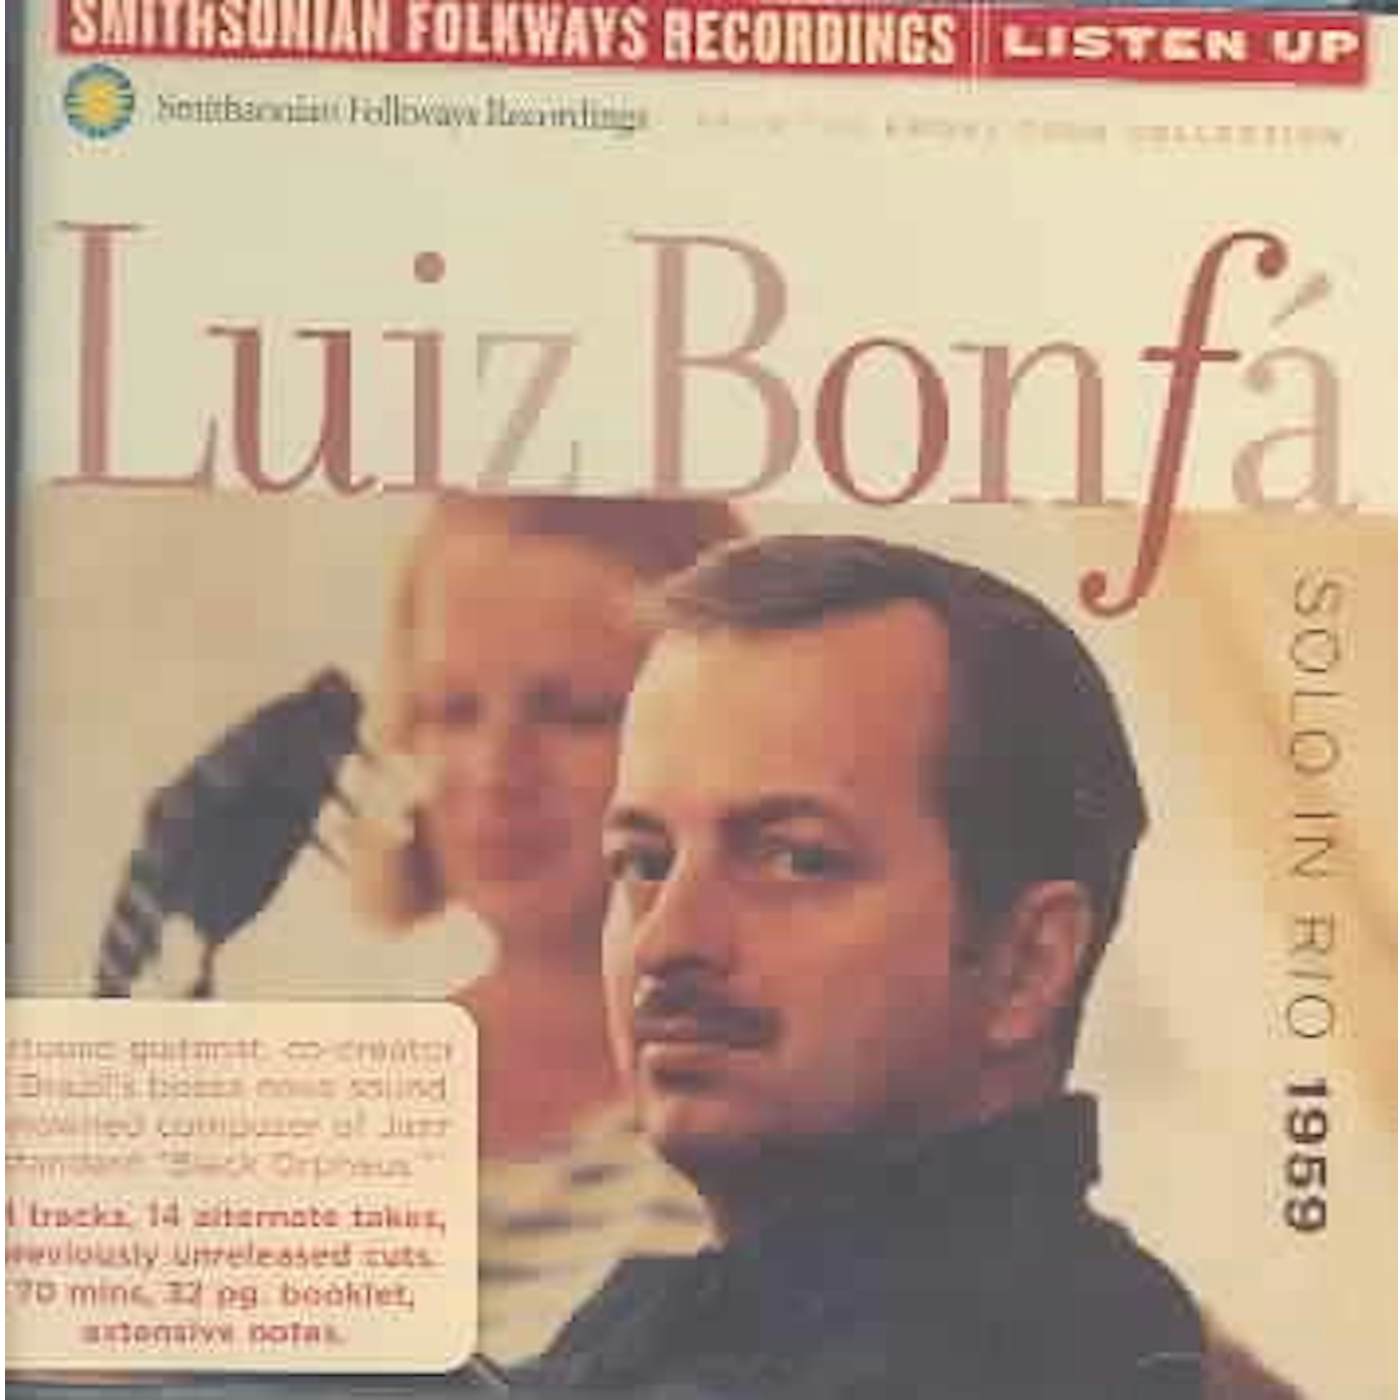 Luiz Bonfá Solo In Rio 1959 CD